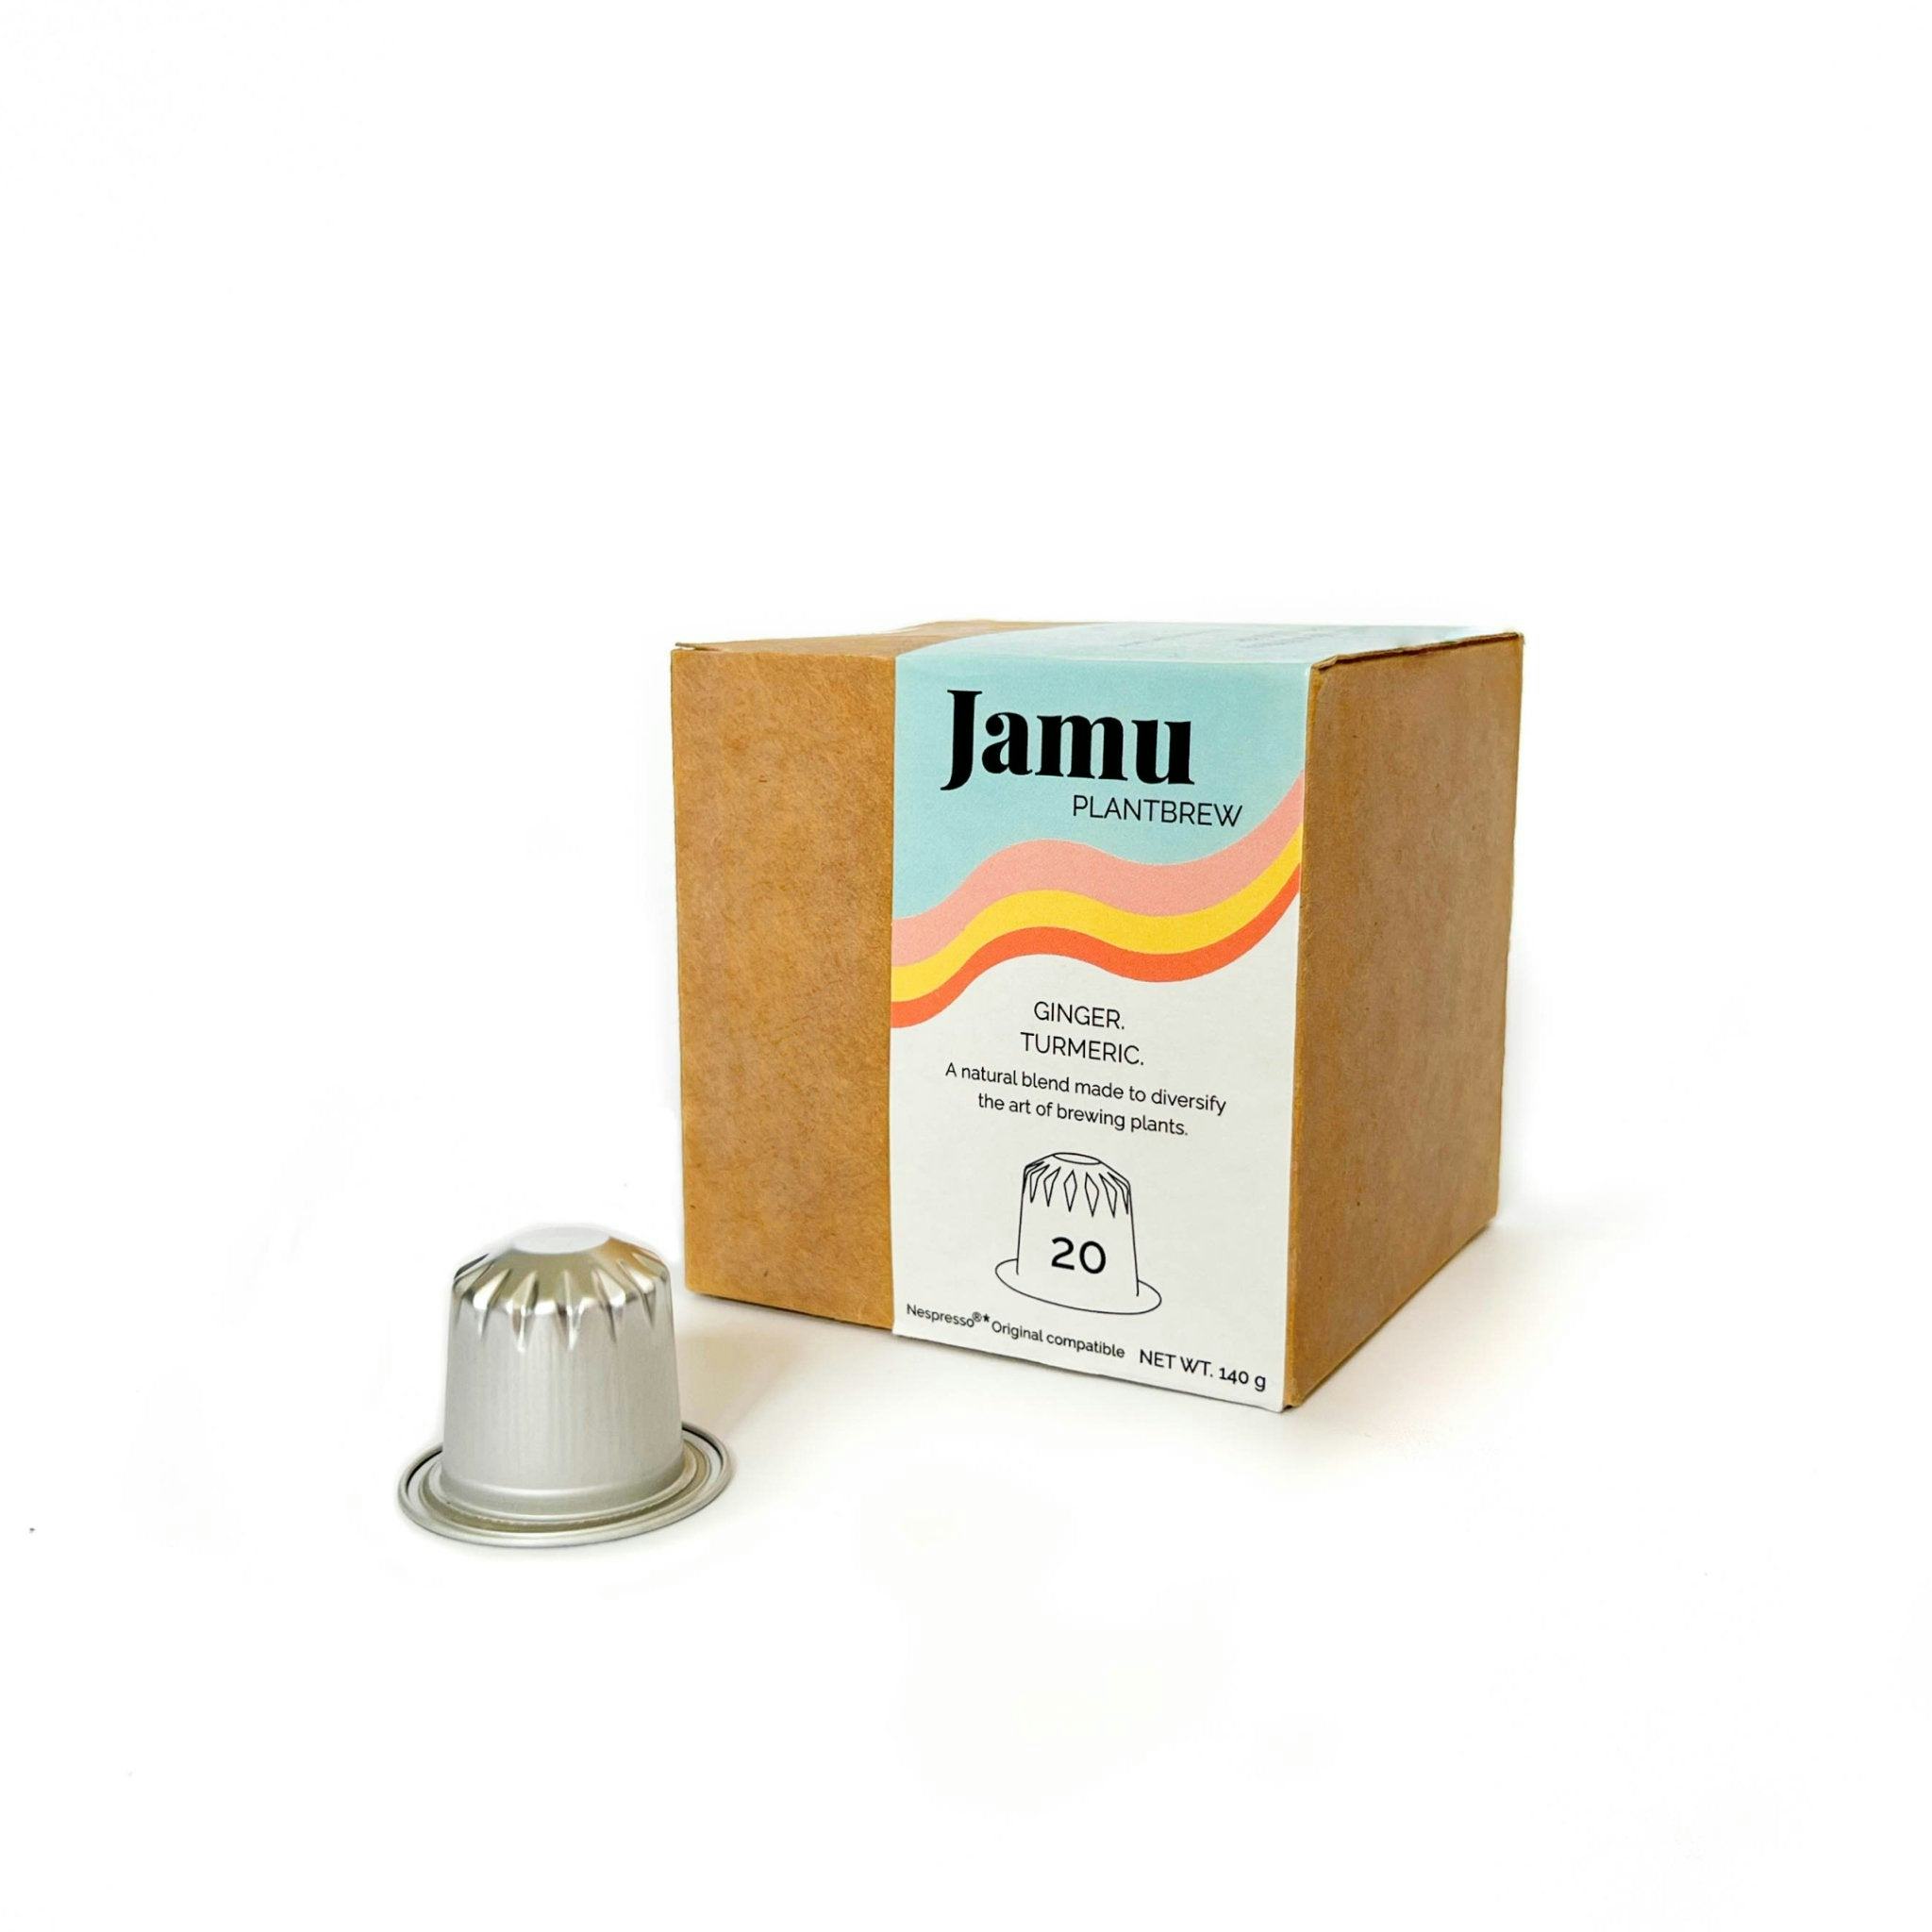 Jamu PlantBrew, Ginger & Curcuma (20 capsules), handwerkliches Produkt für den Direktverkauf in der Schweiz